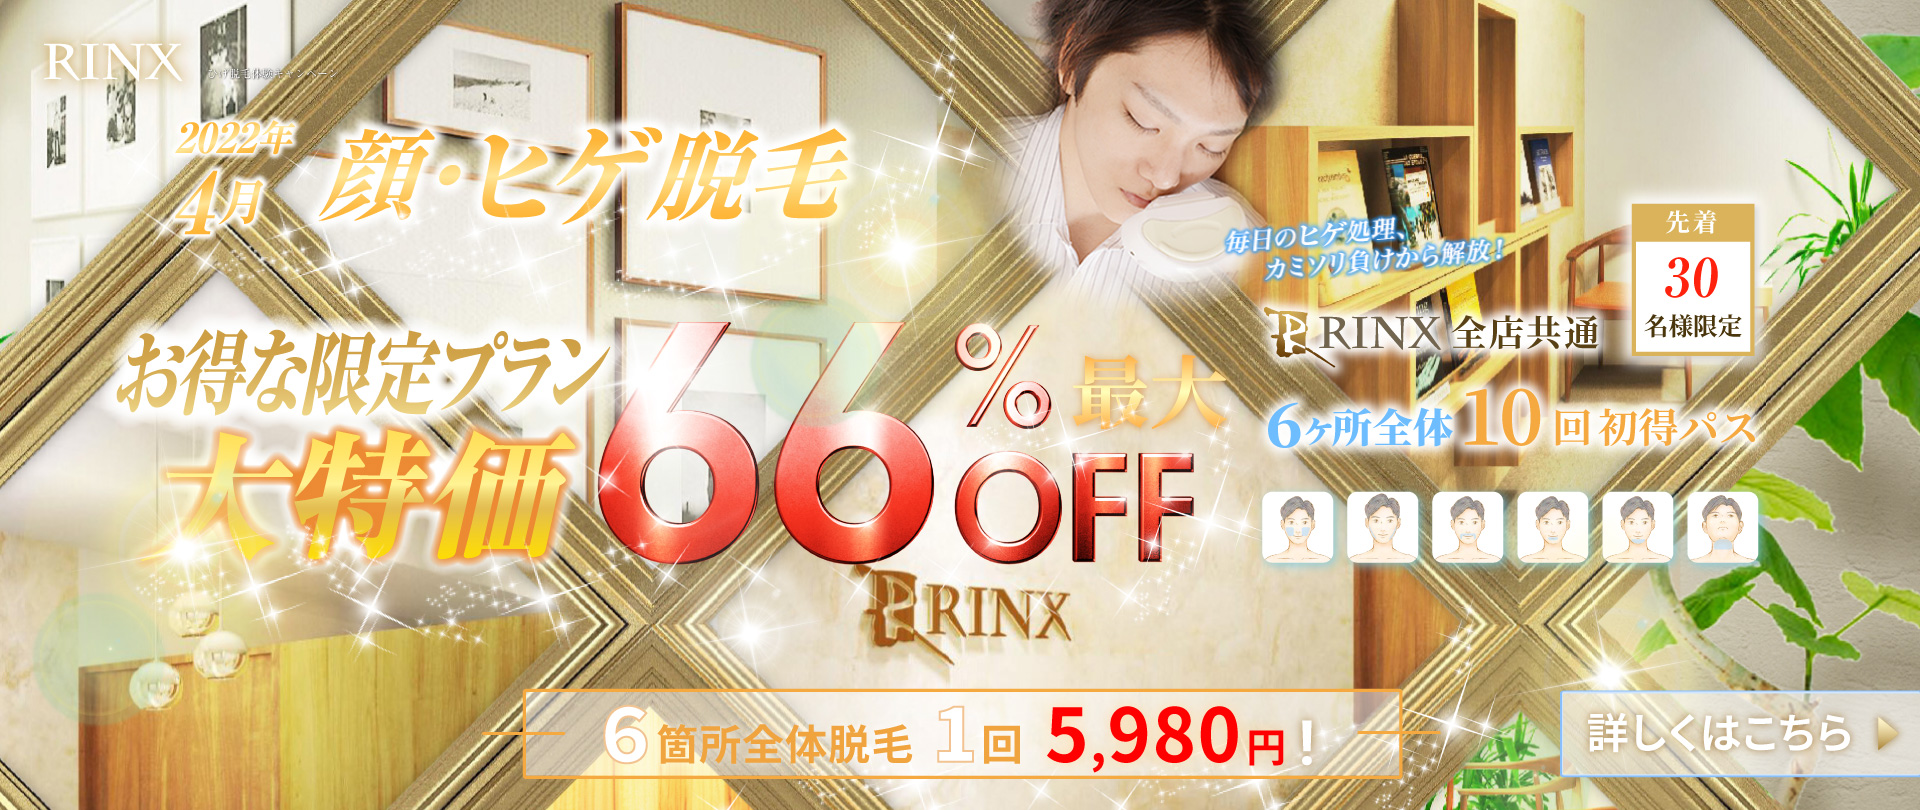 RINX 東京上野店の画像